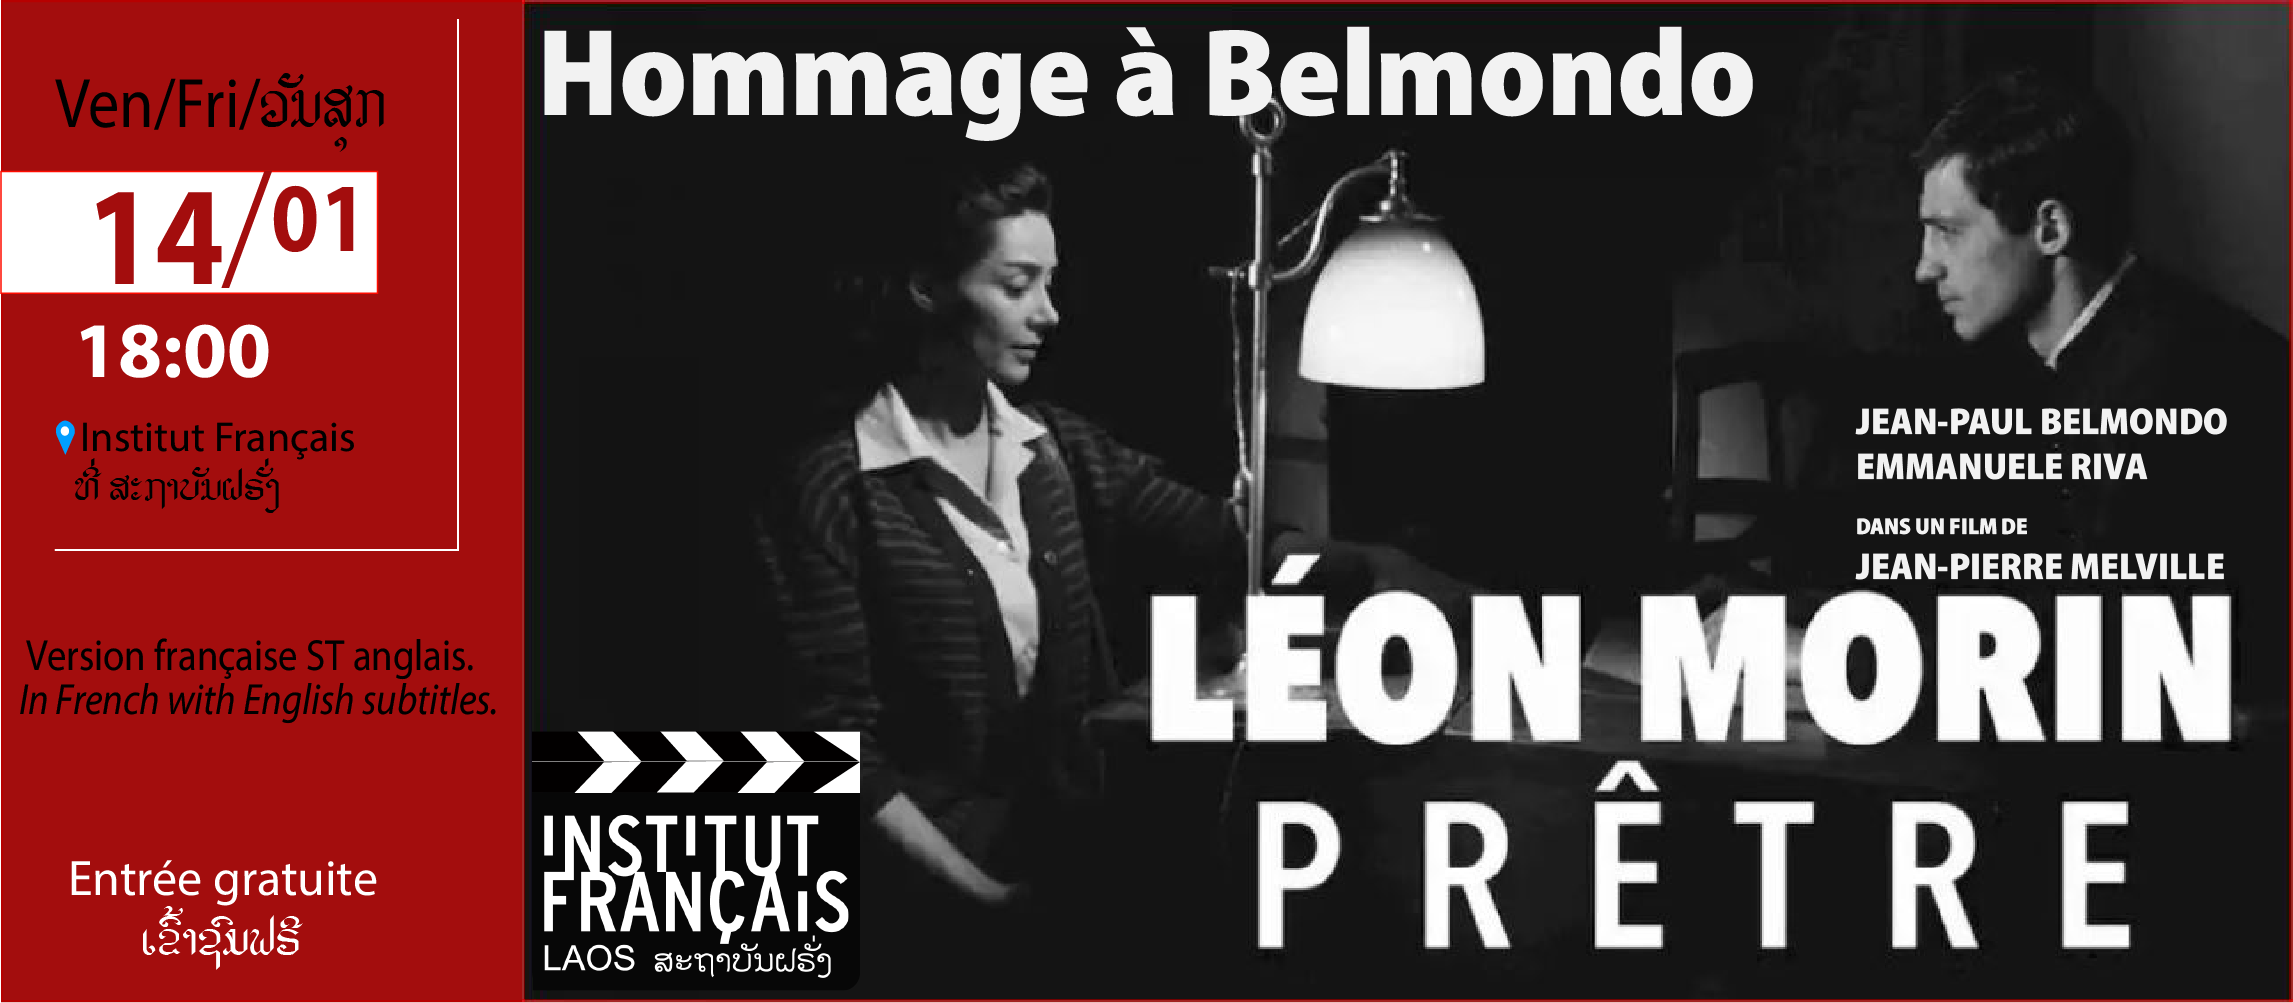 Cinéma en plein air ! HOMMAGE A BELMONDO “Léon Morin prêtre” Jean-Paul Belmondo (1933-2021)